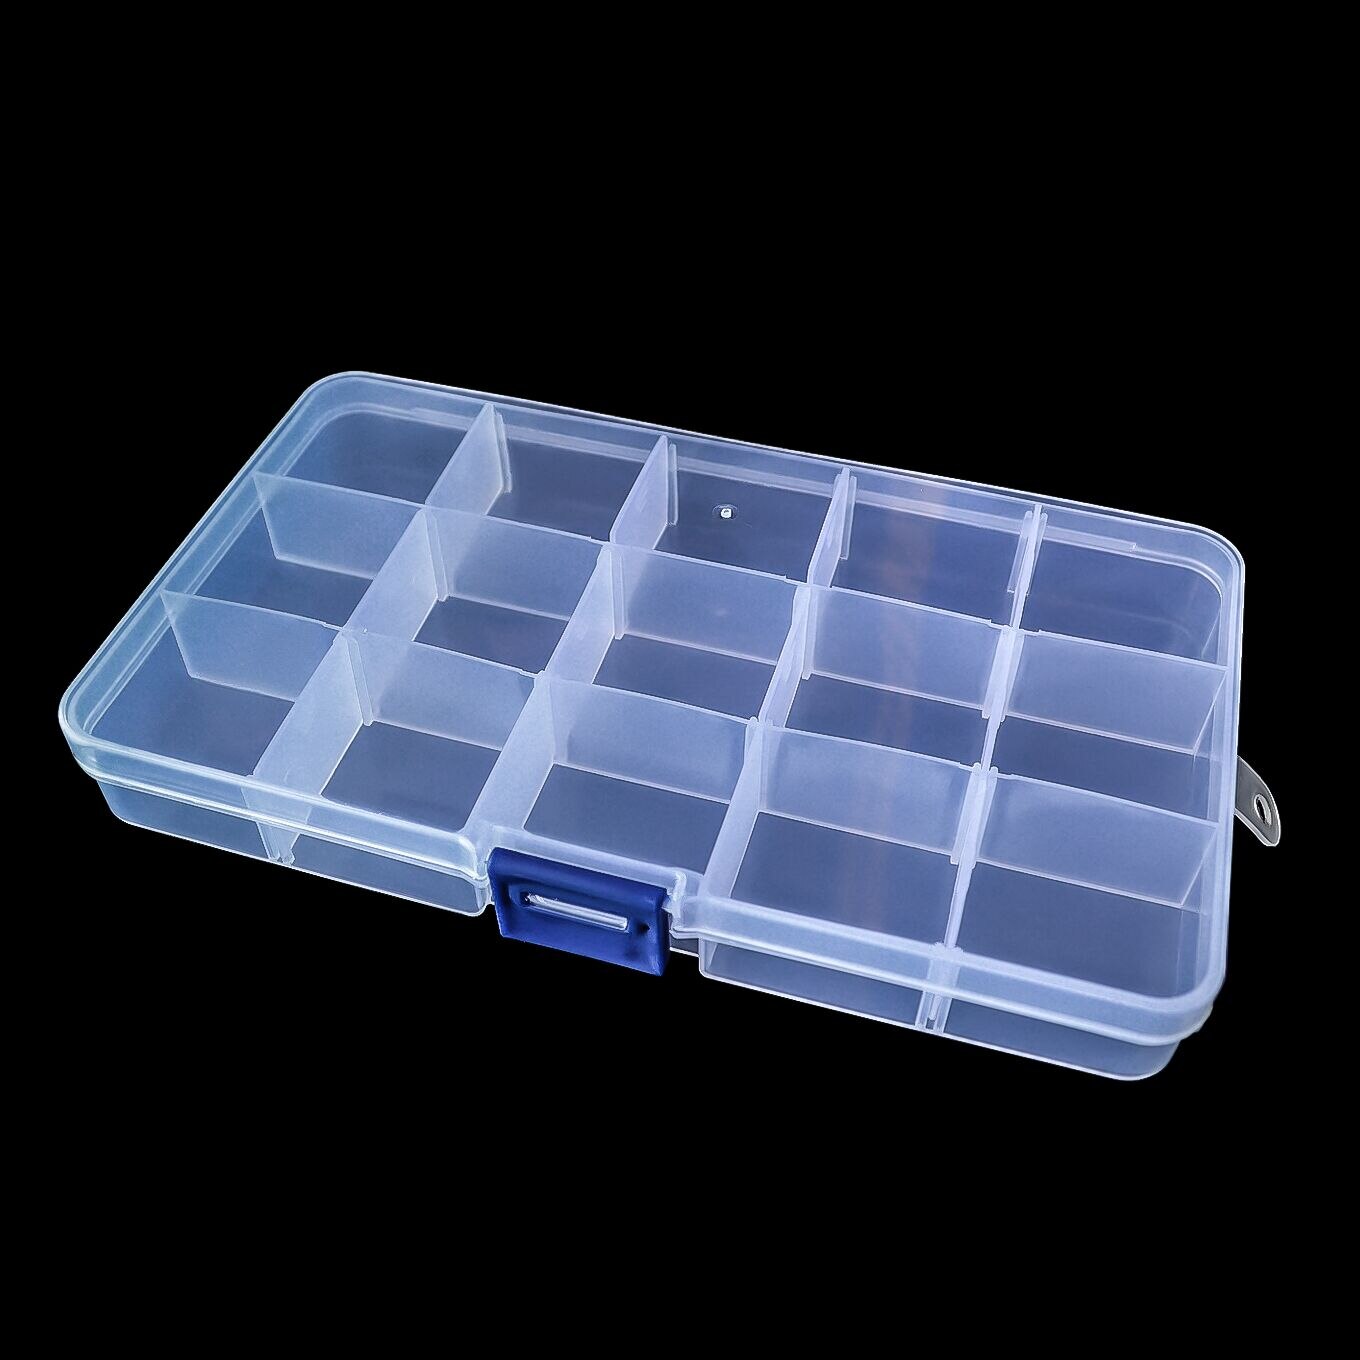 Caja organizadora de plastico con 15 compartimientos - Cimech 3d